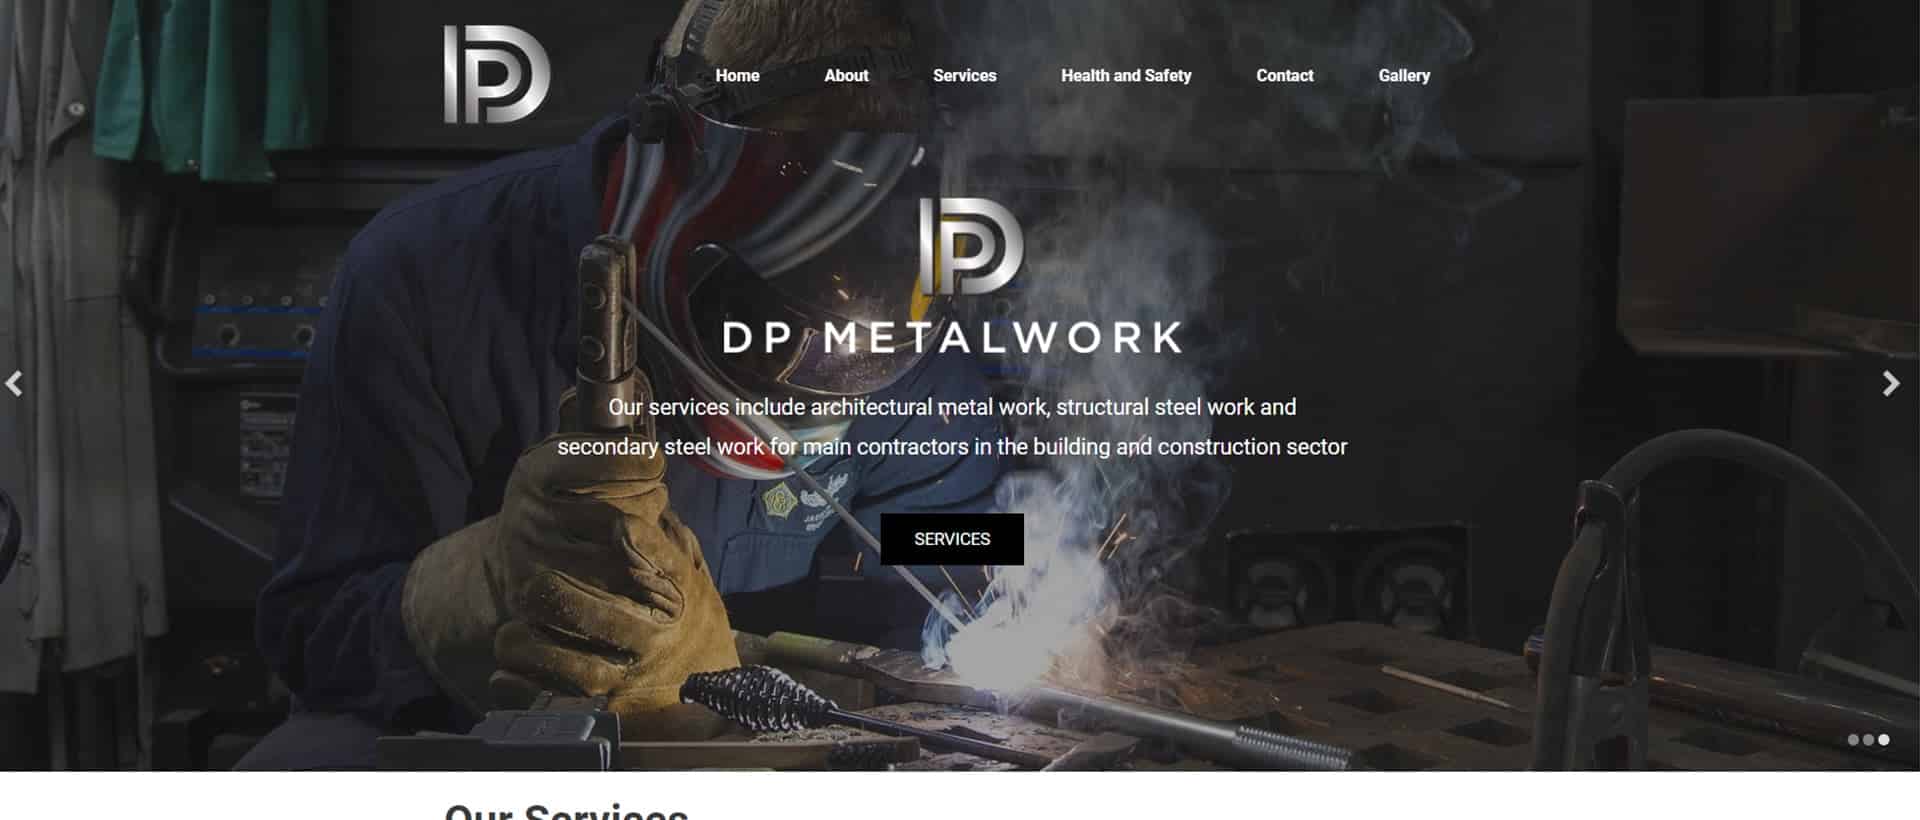 BWS_DP Metalwork-After